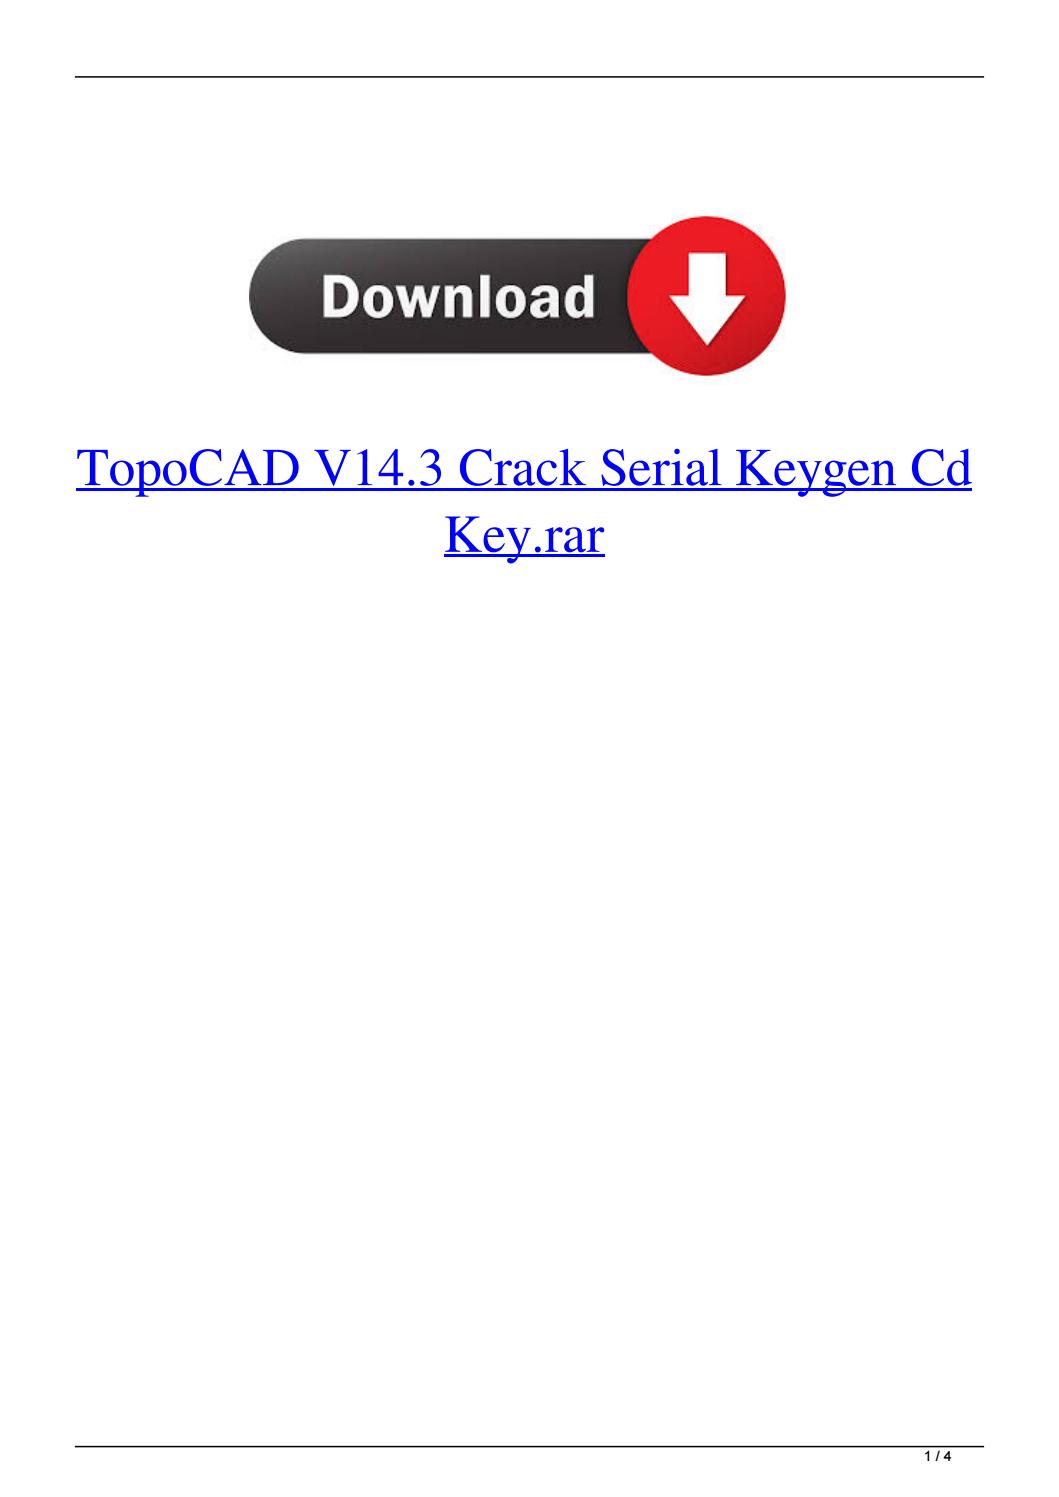 chilkat software keygen crack serial